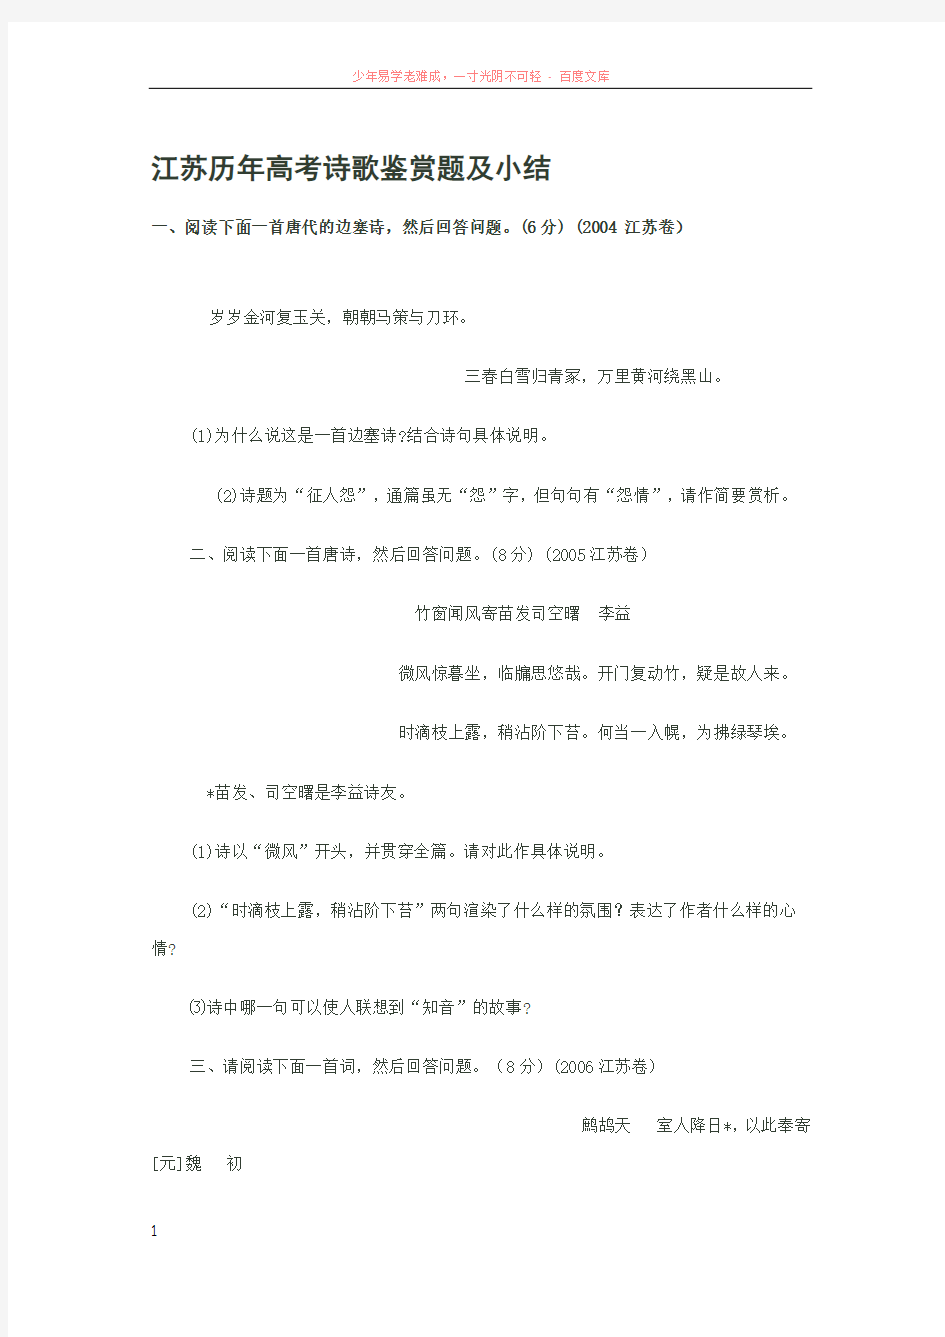 江苏历年高考诗歌鉴赏题及小结 (2)